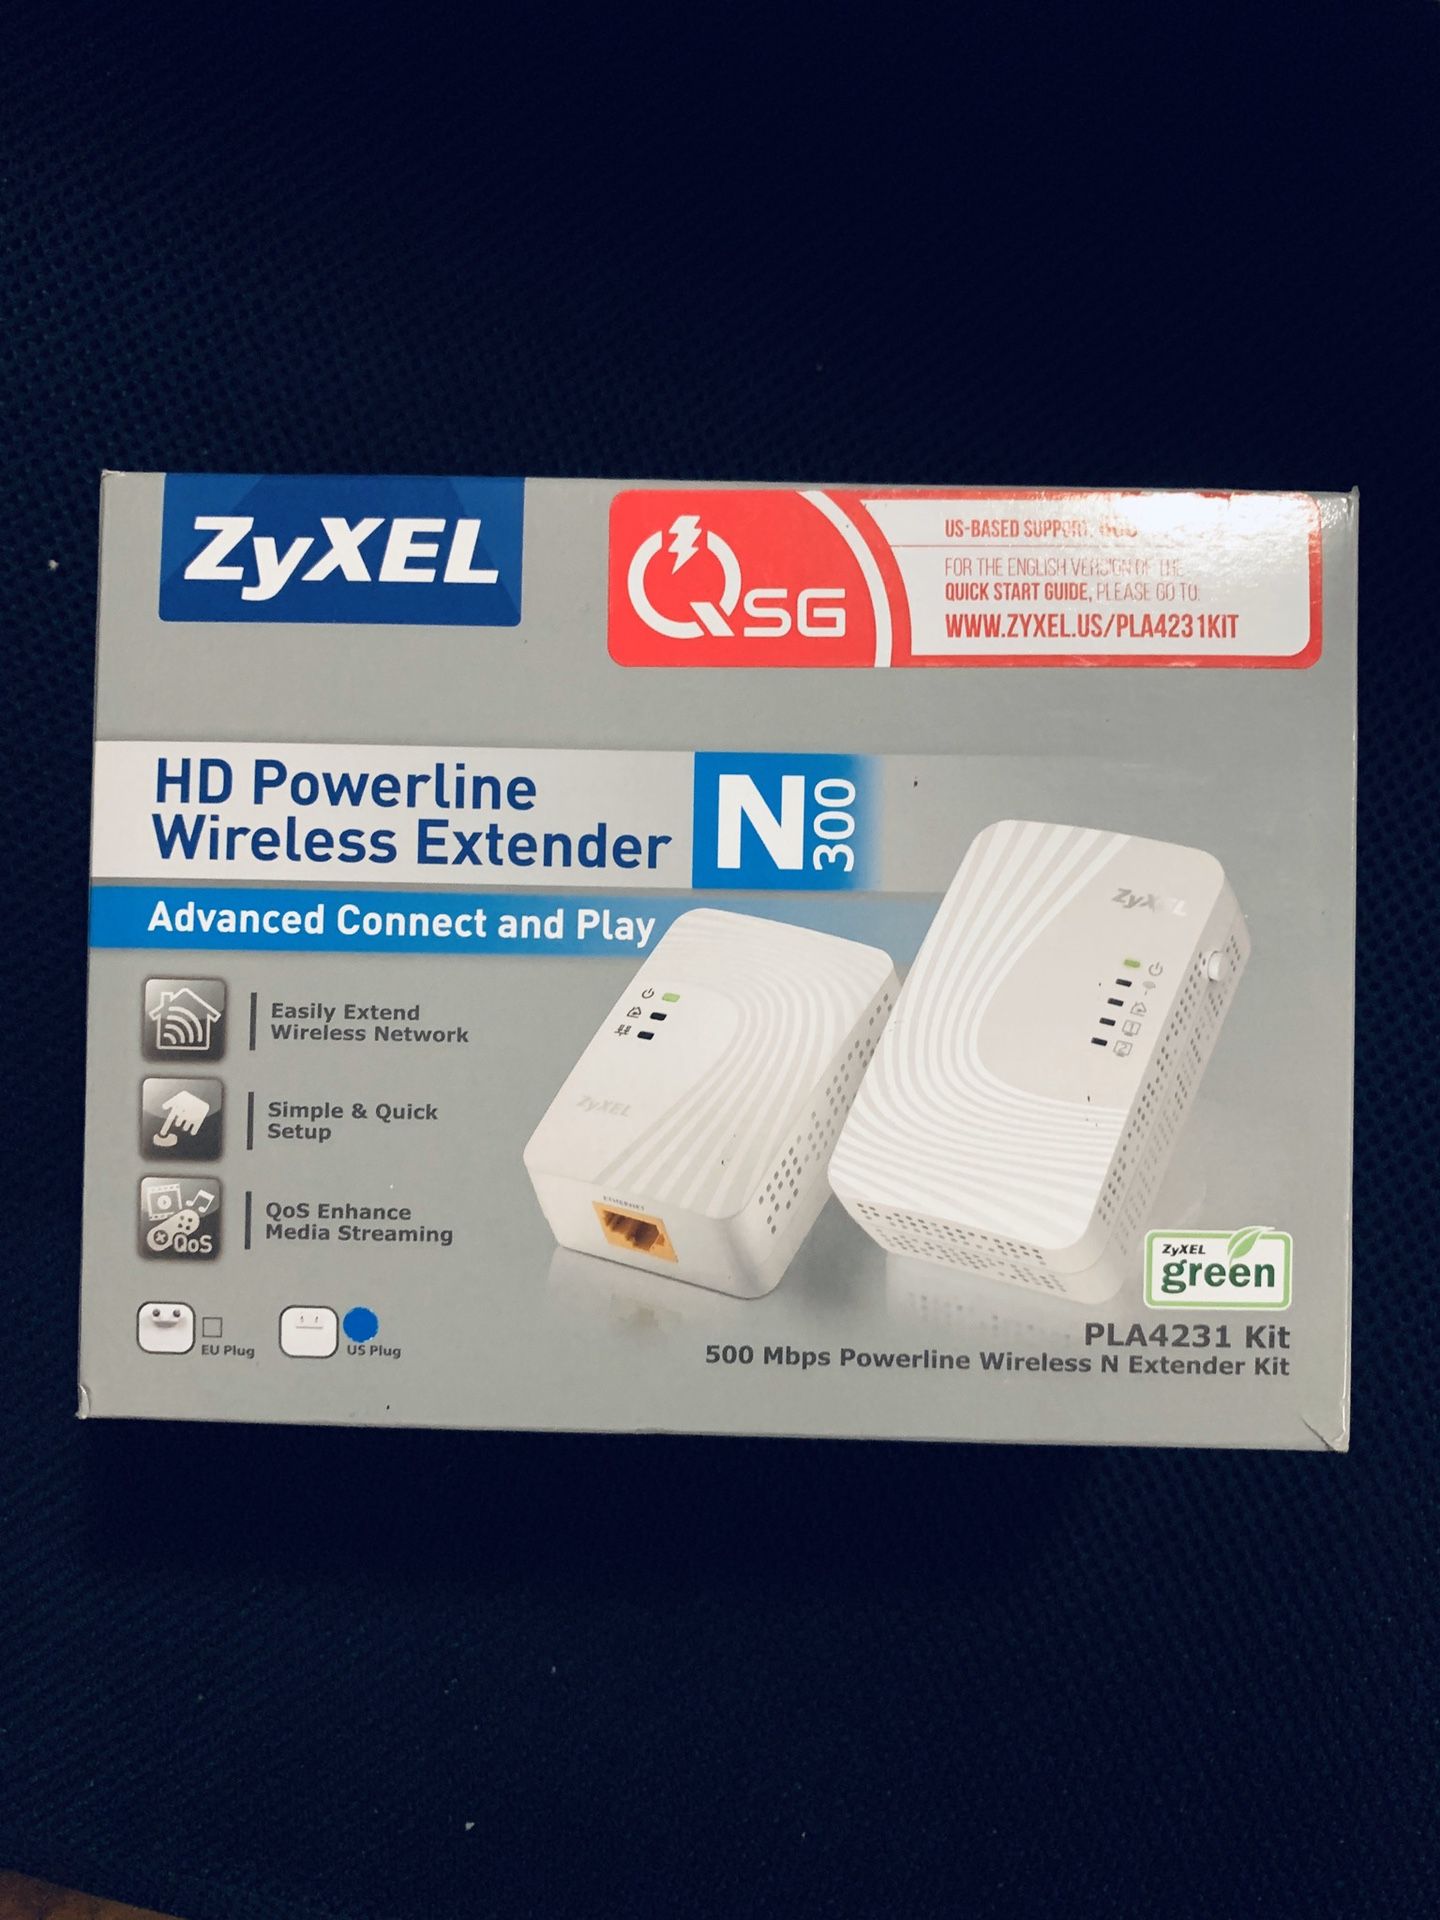 ZyXEL WiFi Powerline Wireless N Extender